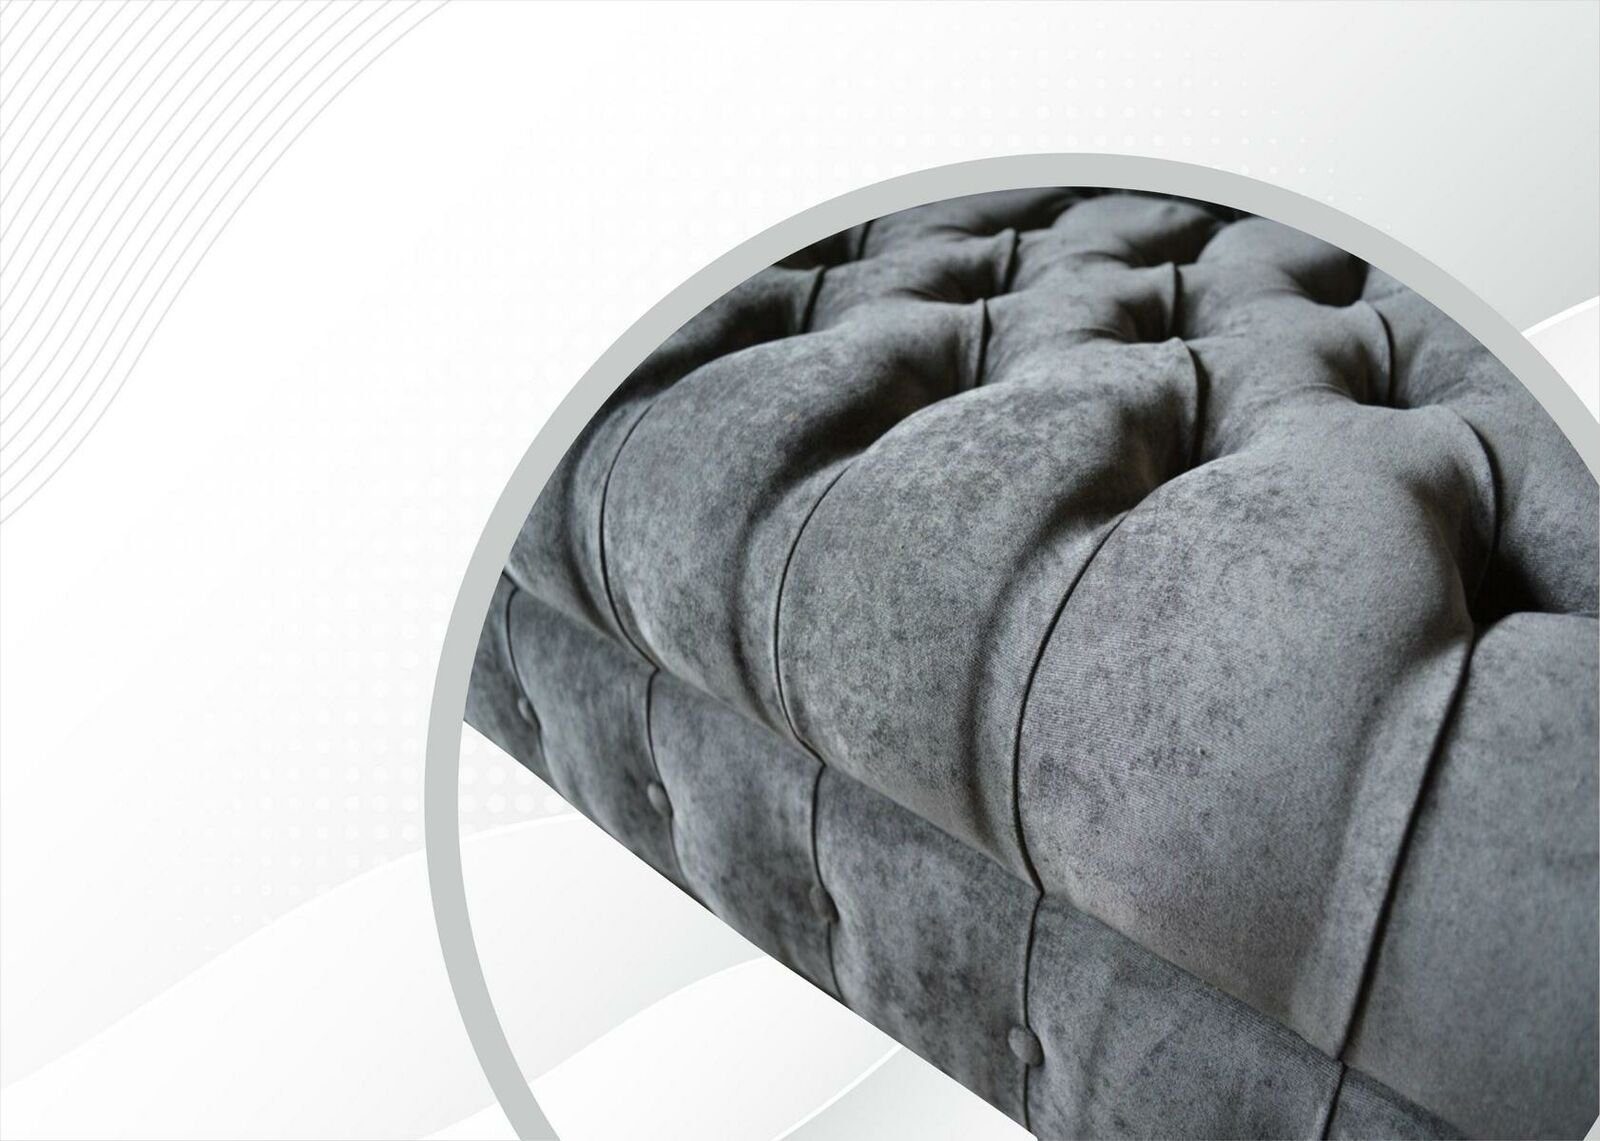 JVmoebel 2 grauer Chesterfield Neu, Chesterfield-Sofa Made Sitzer in Wohnzimmermöbel Luxus Europe